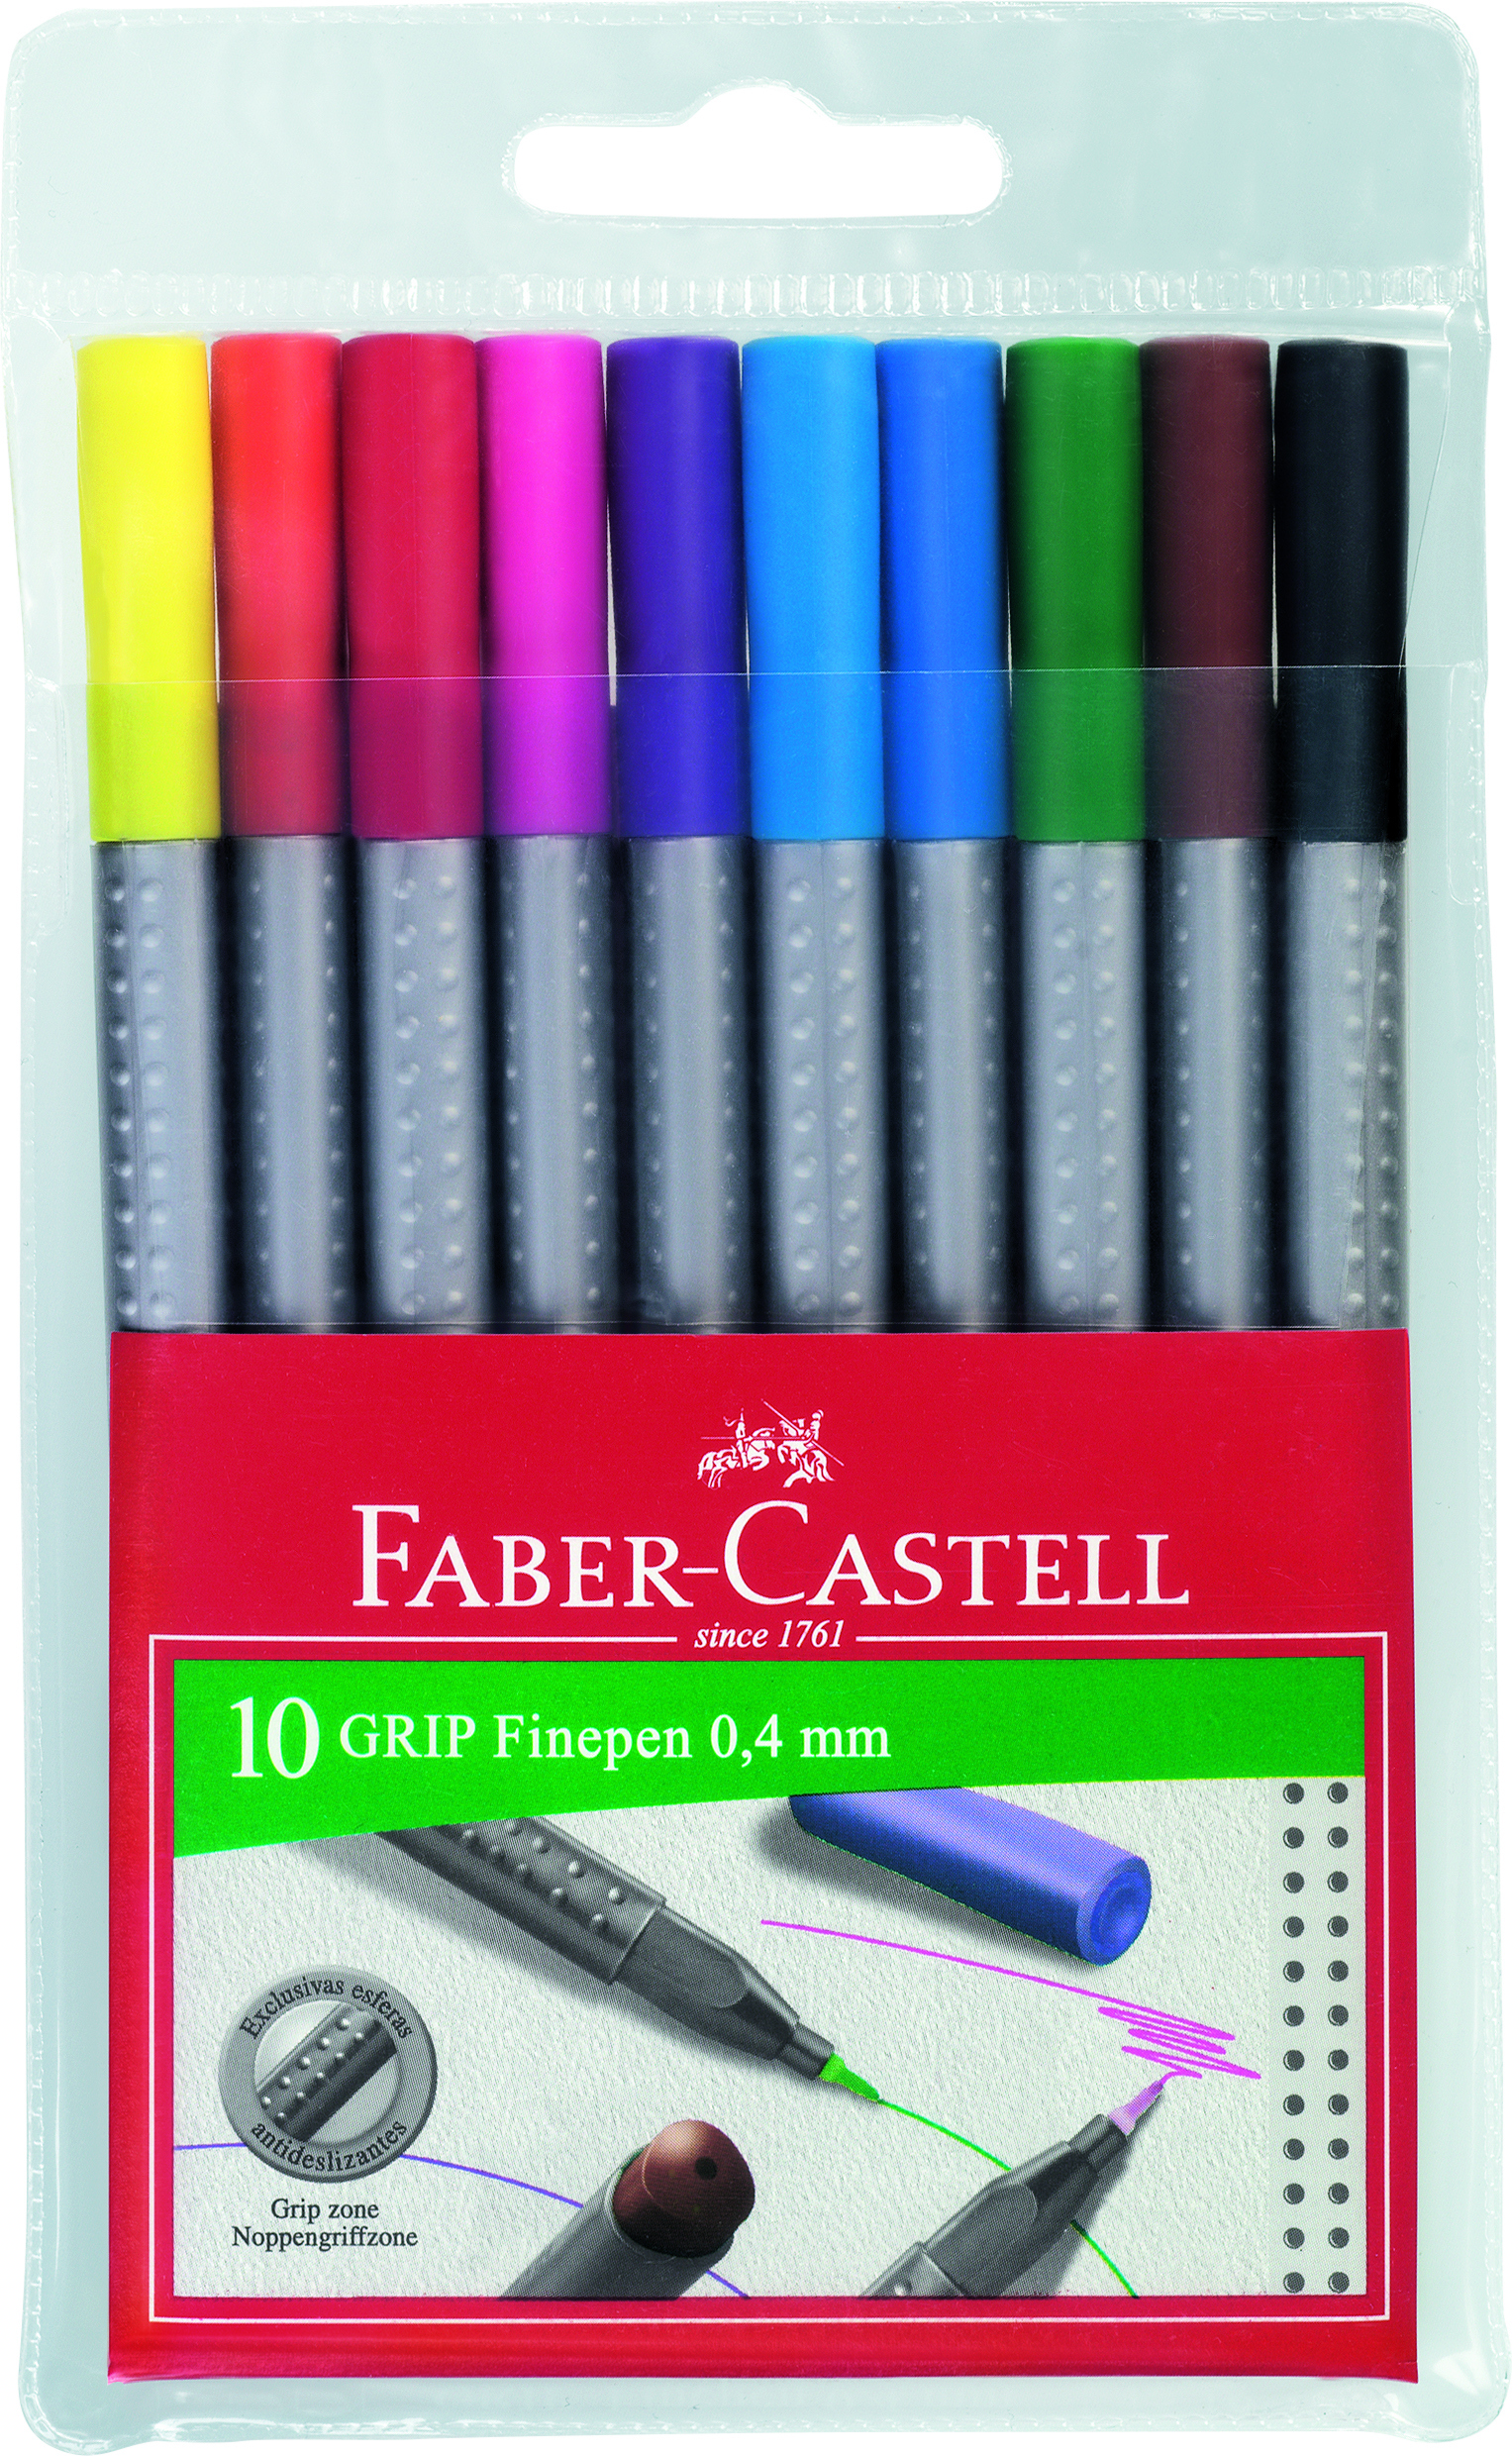 FABER-CASTELL Grip Finepen 0,4mm 151610 10 couleurs, étui